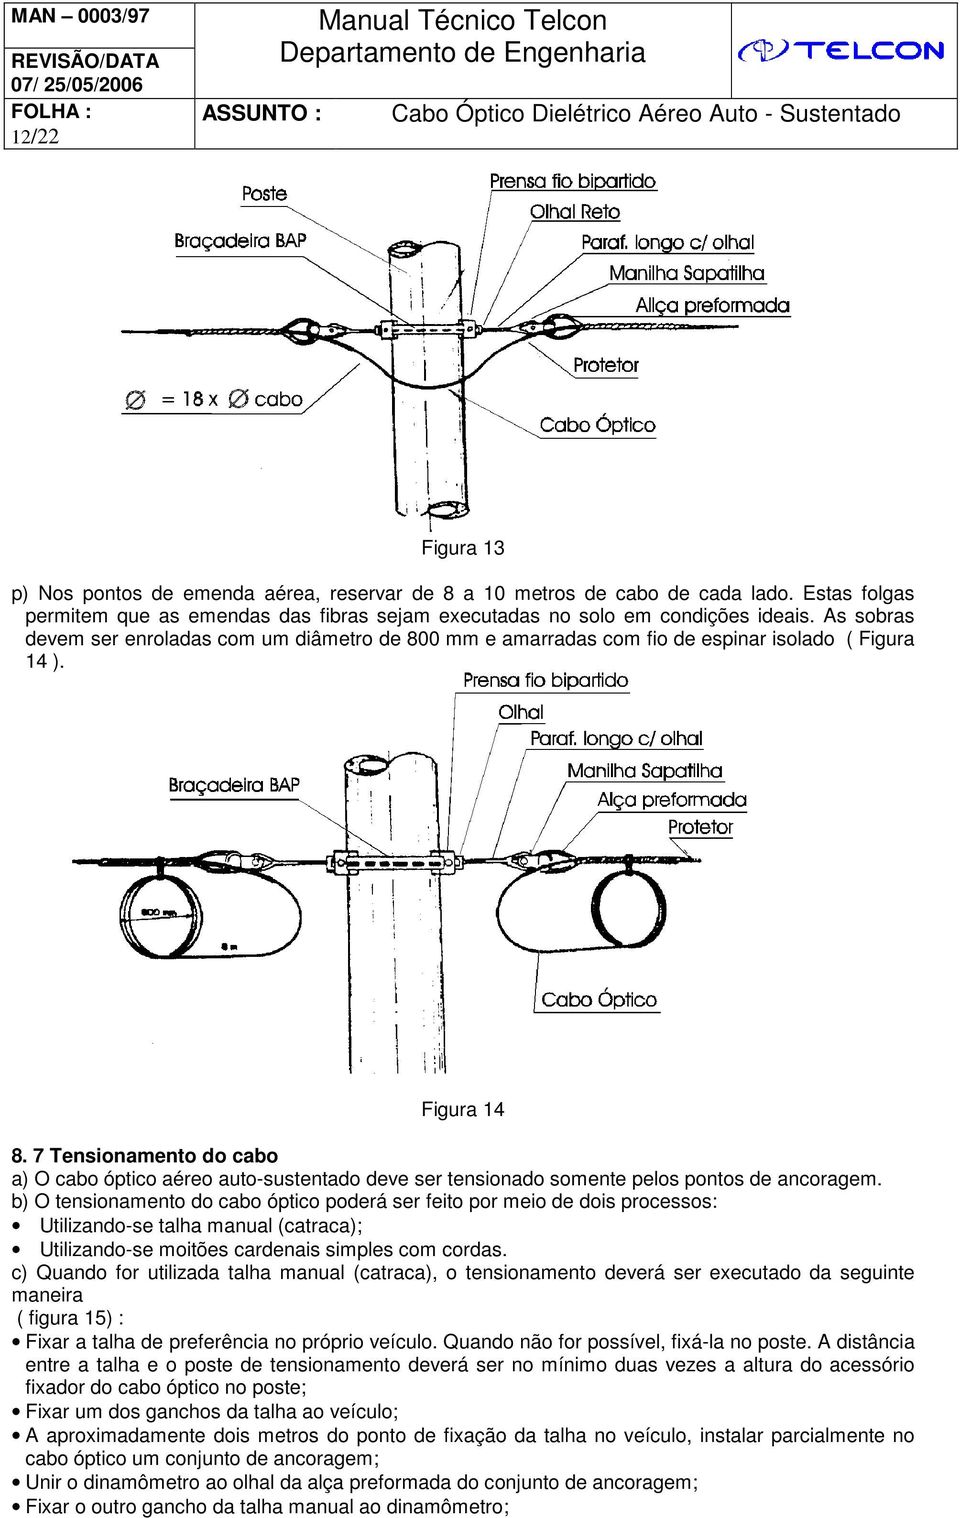 7 Tensionamento do cabo a) O cabo óptico aéreo auto-sustentado deve ser tensionado somente pelos pontos de ancoragem.